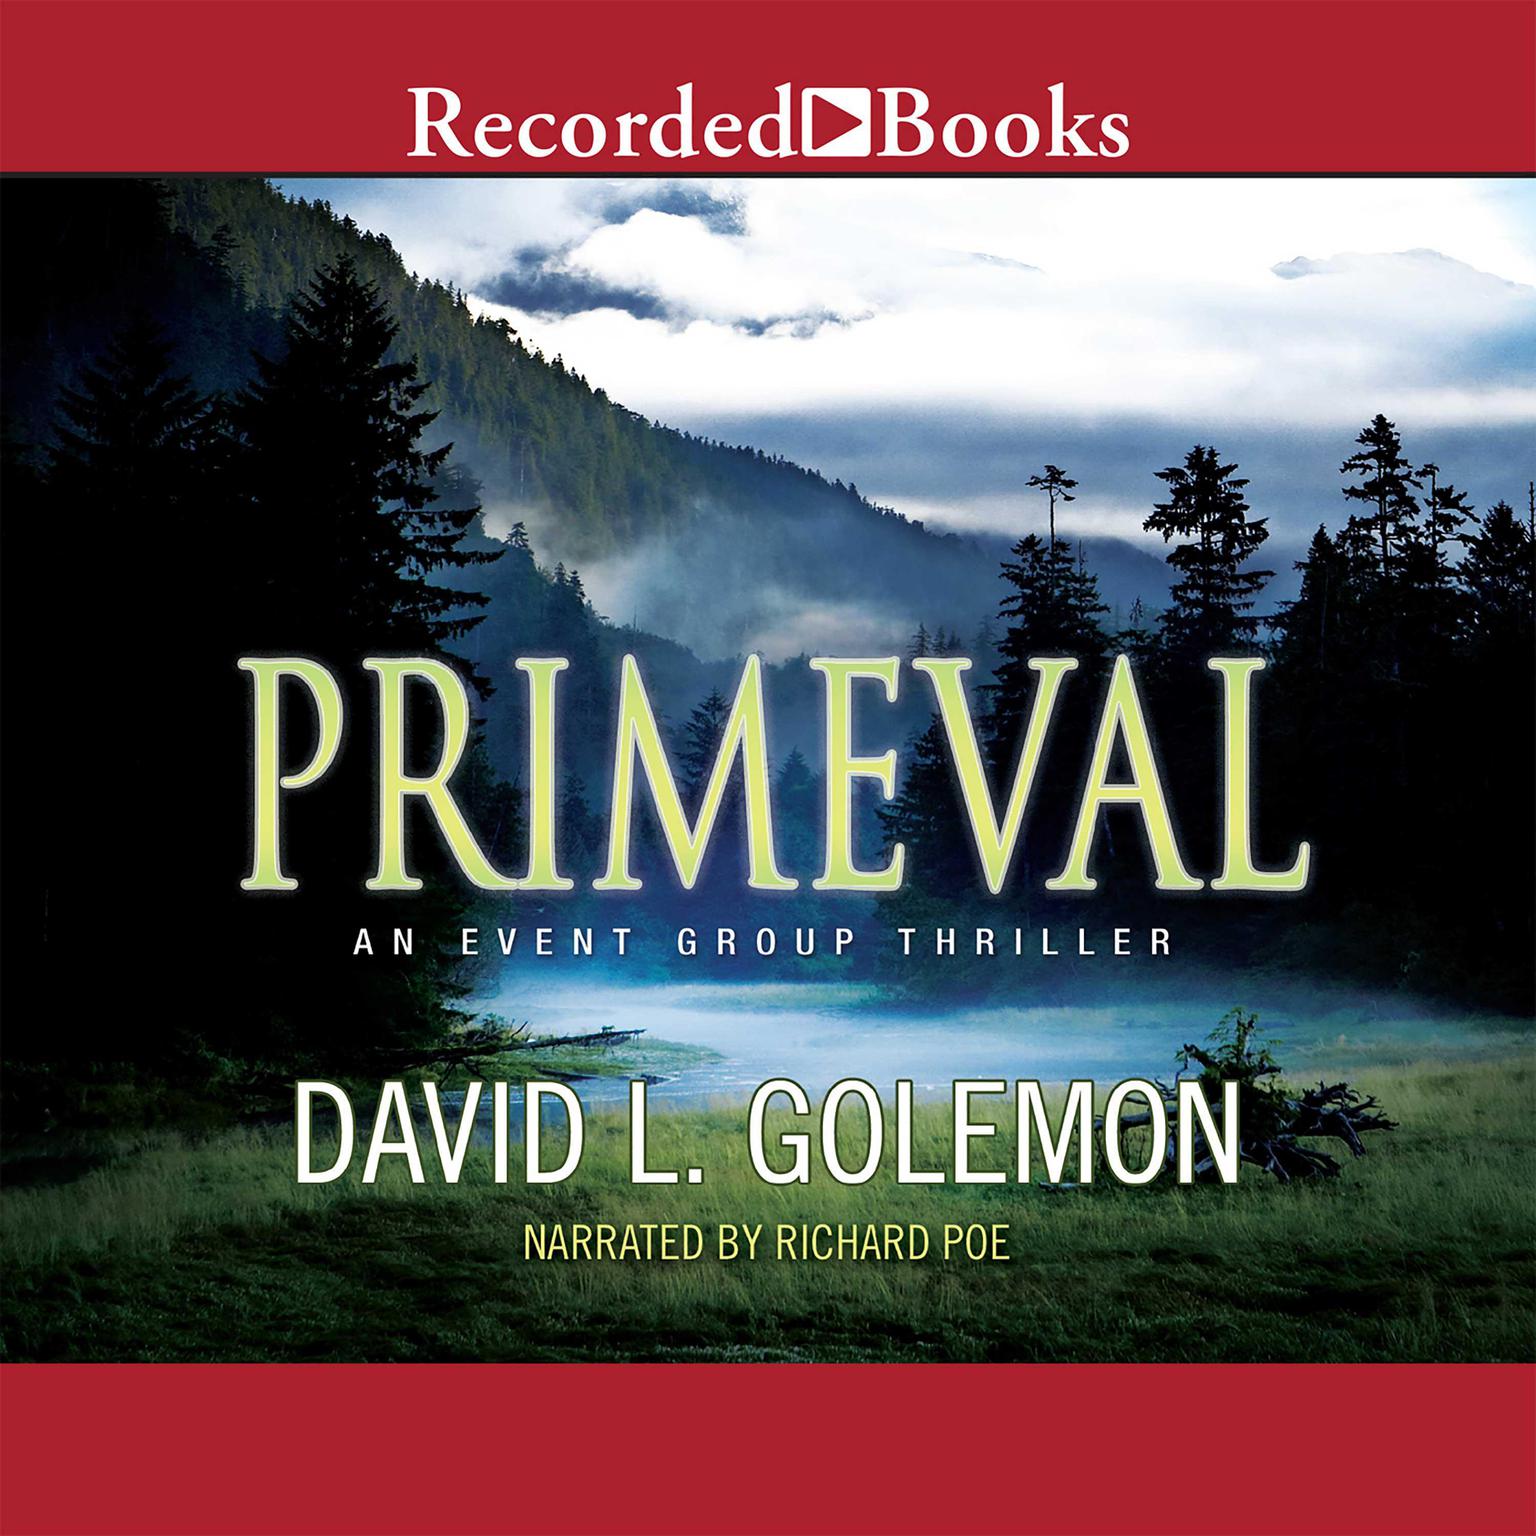 Primeval Audiobook, by David L. Golemon